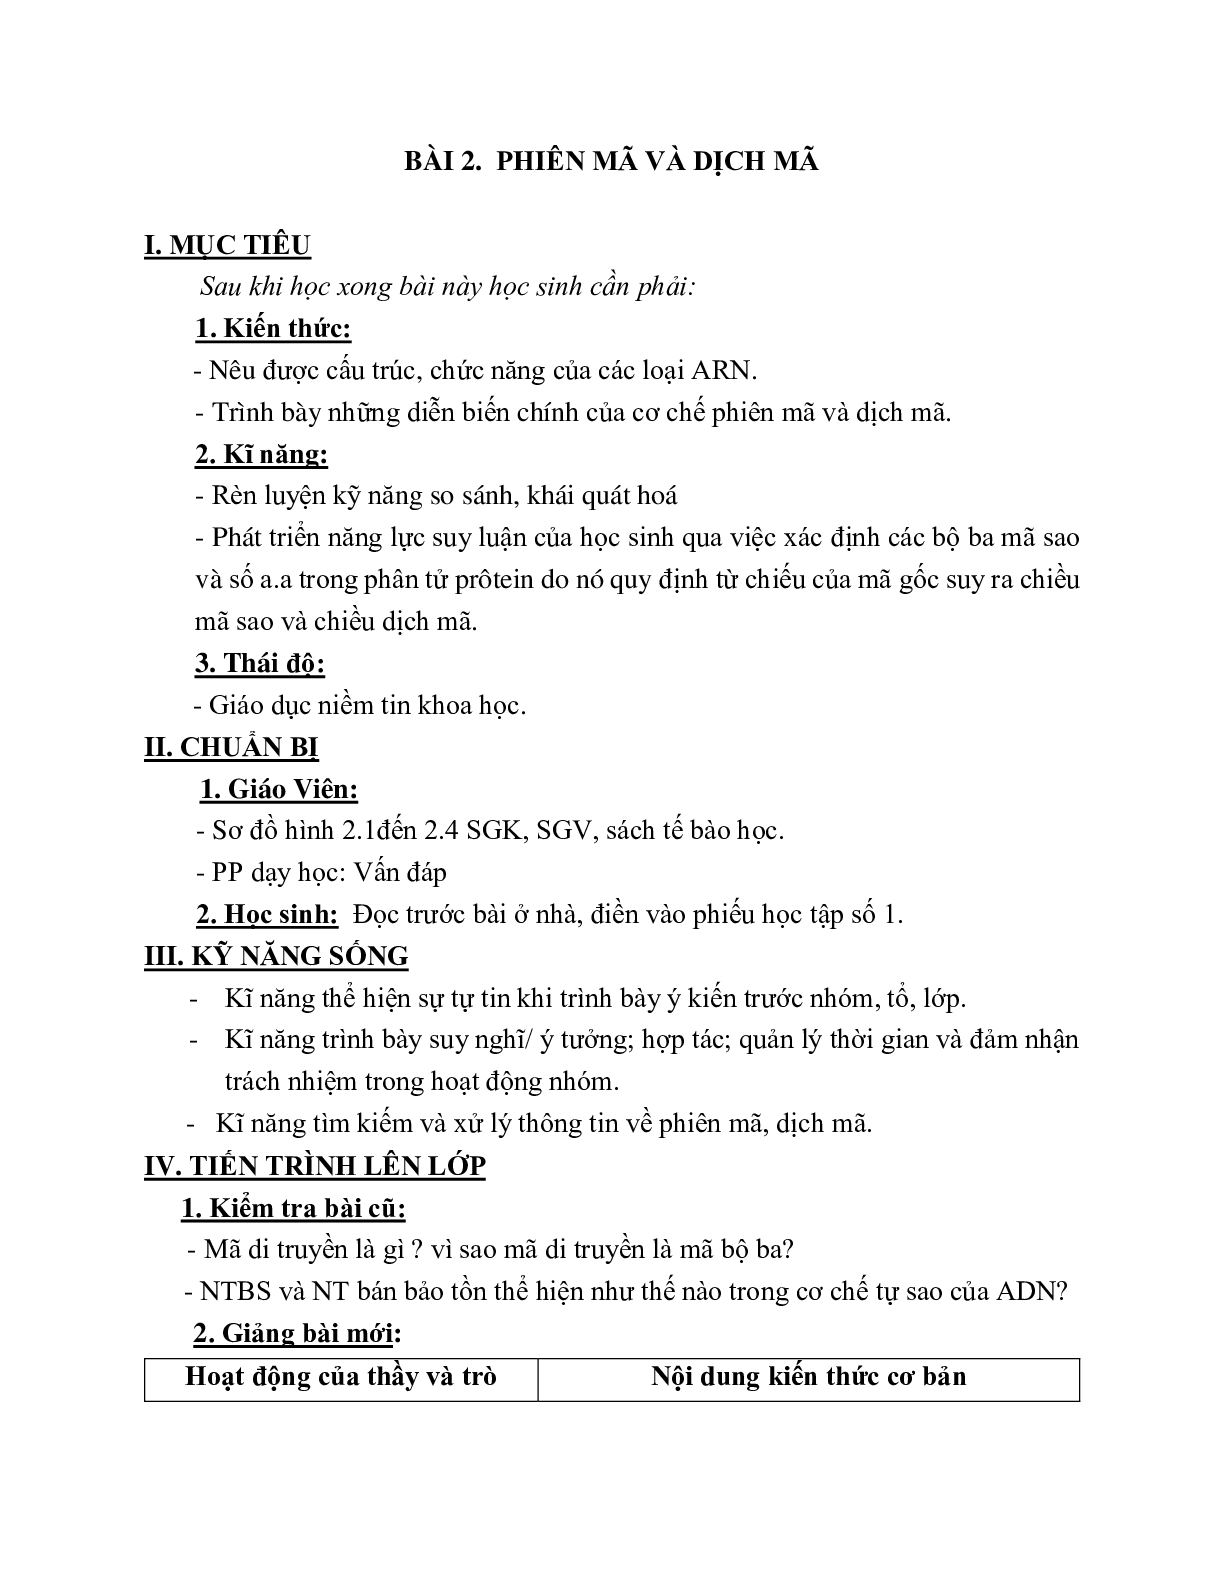 Giáo án Sinh học 12 Bài 2: Phiên mã và dịch mã mới nhất - CV5555 (trang 1)